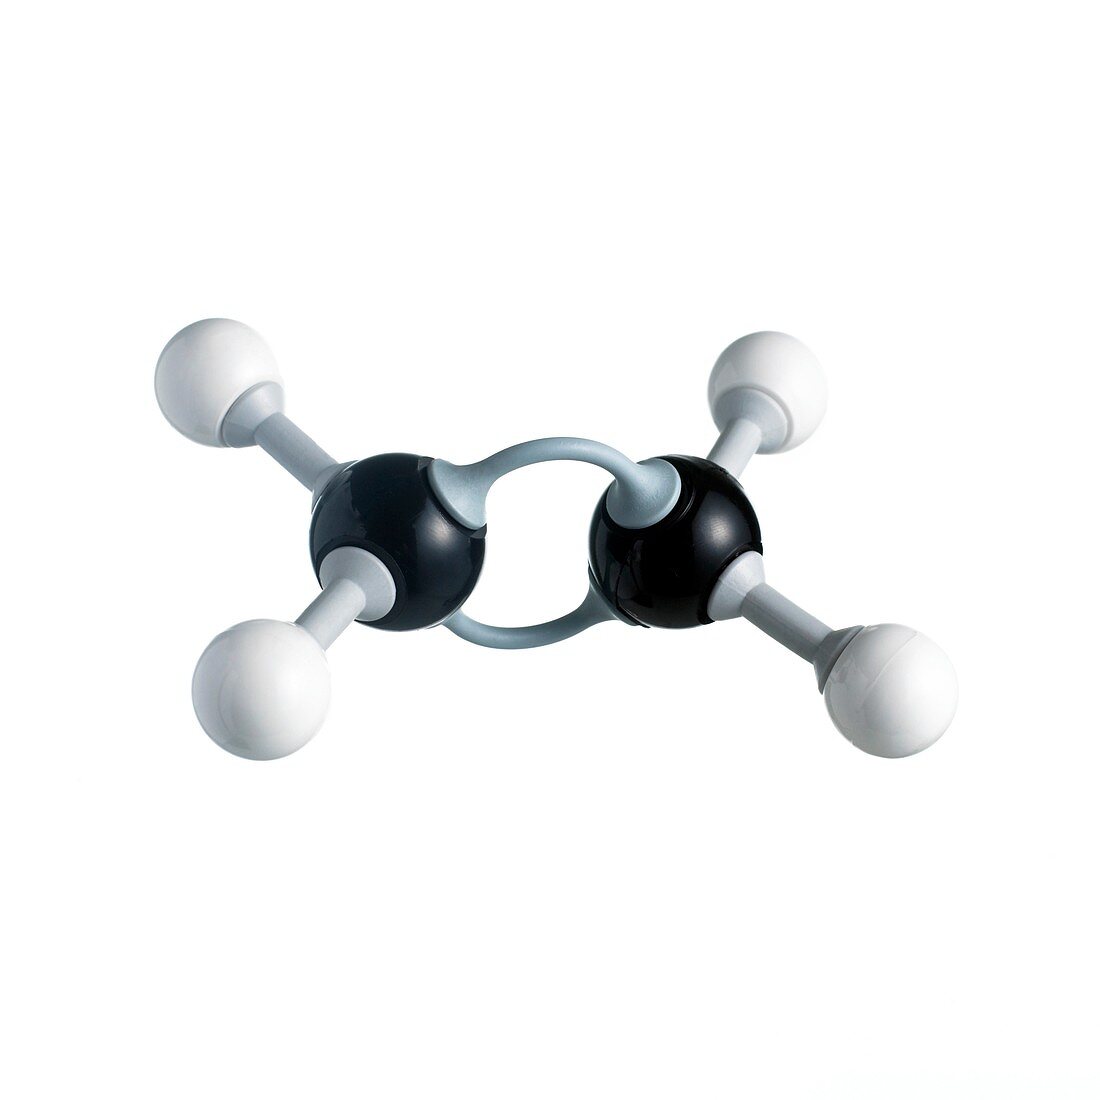 Ethene molecule